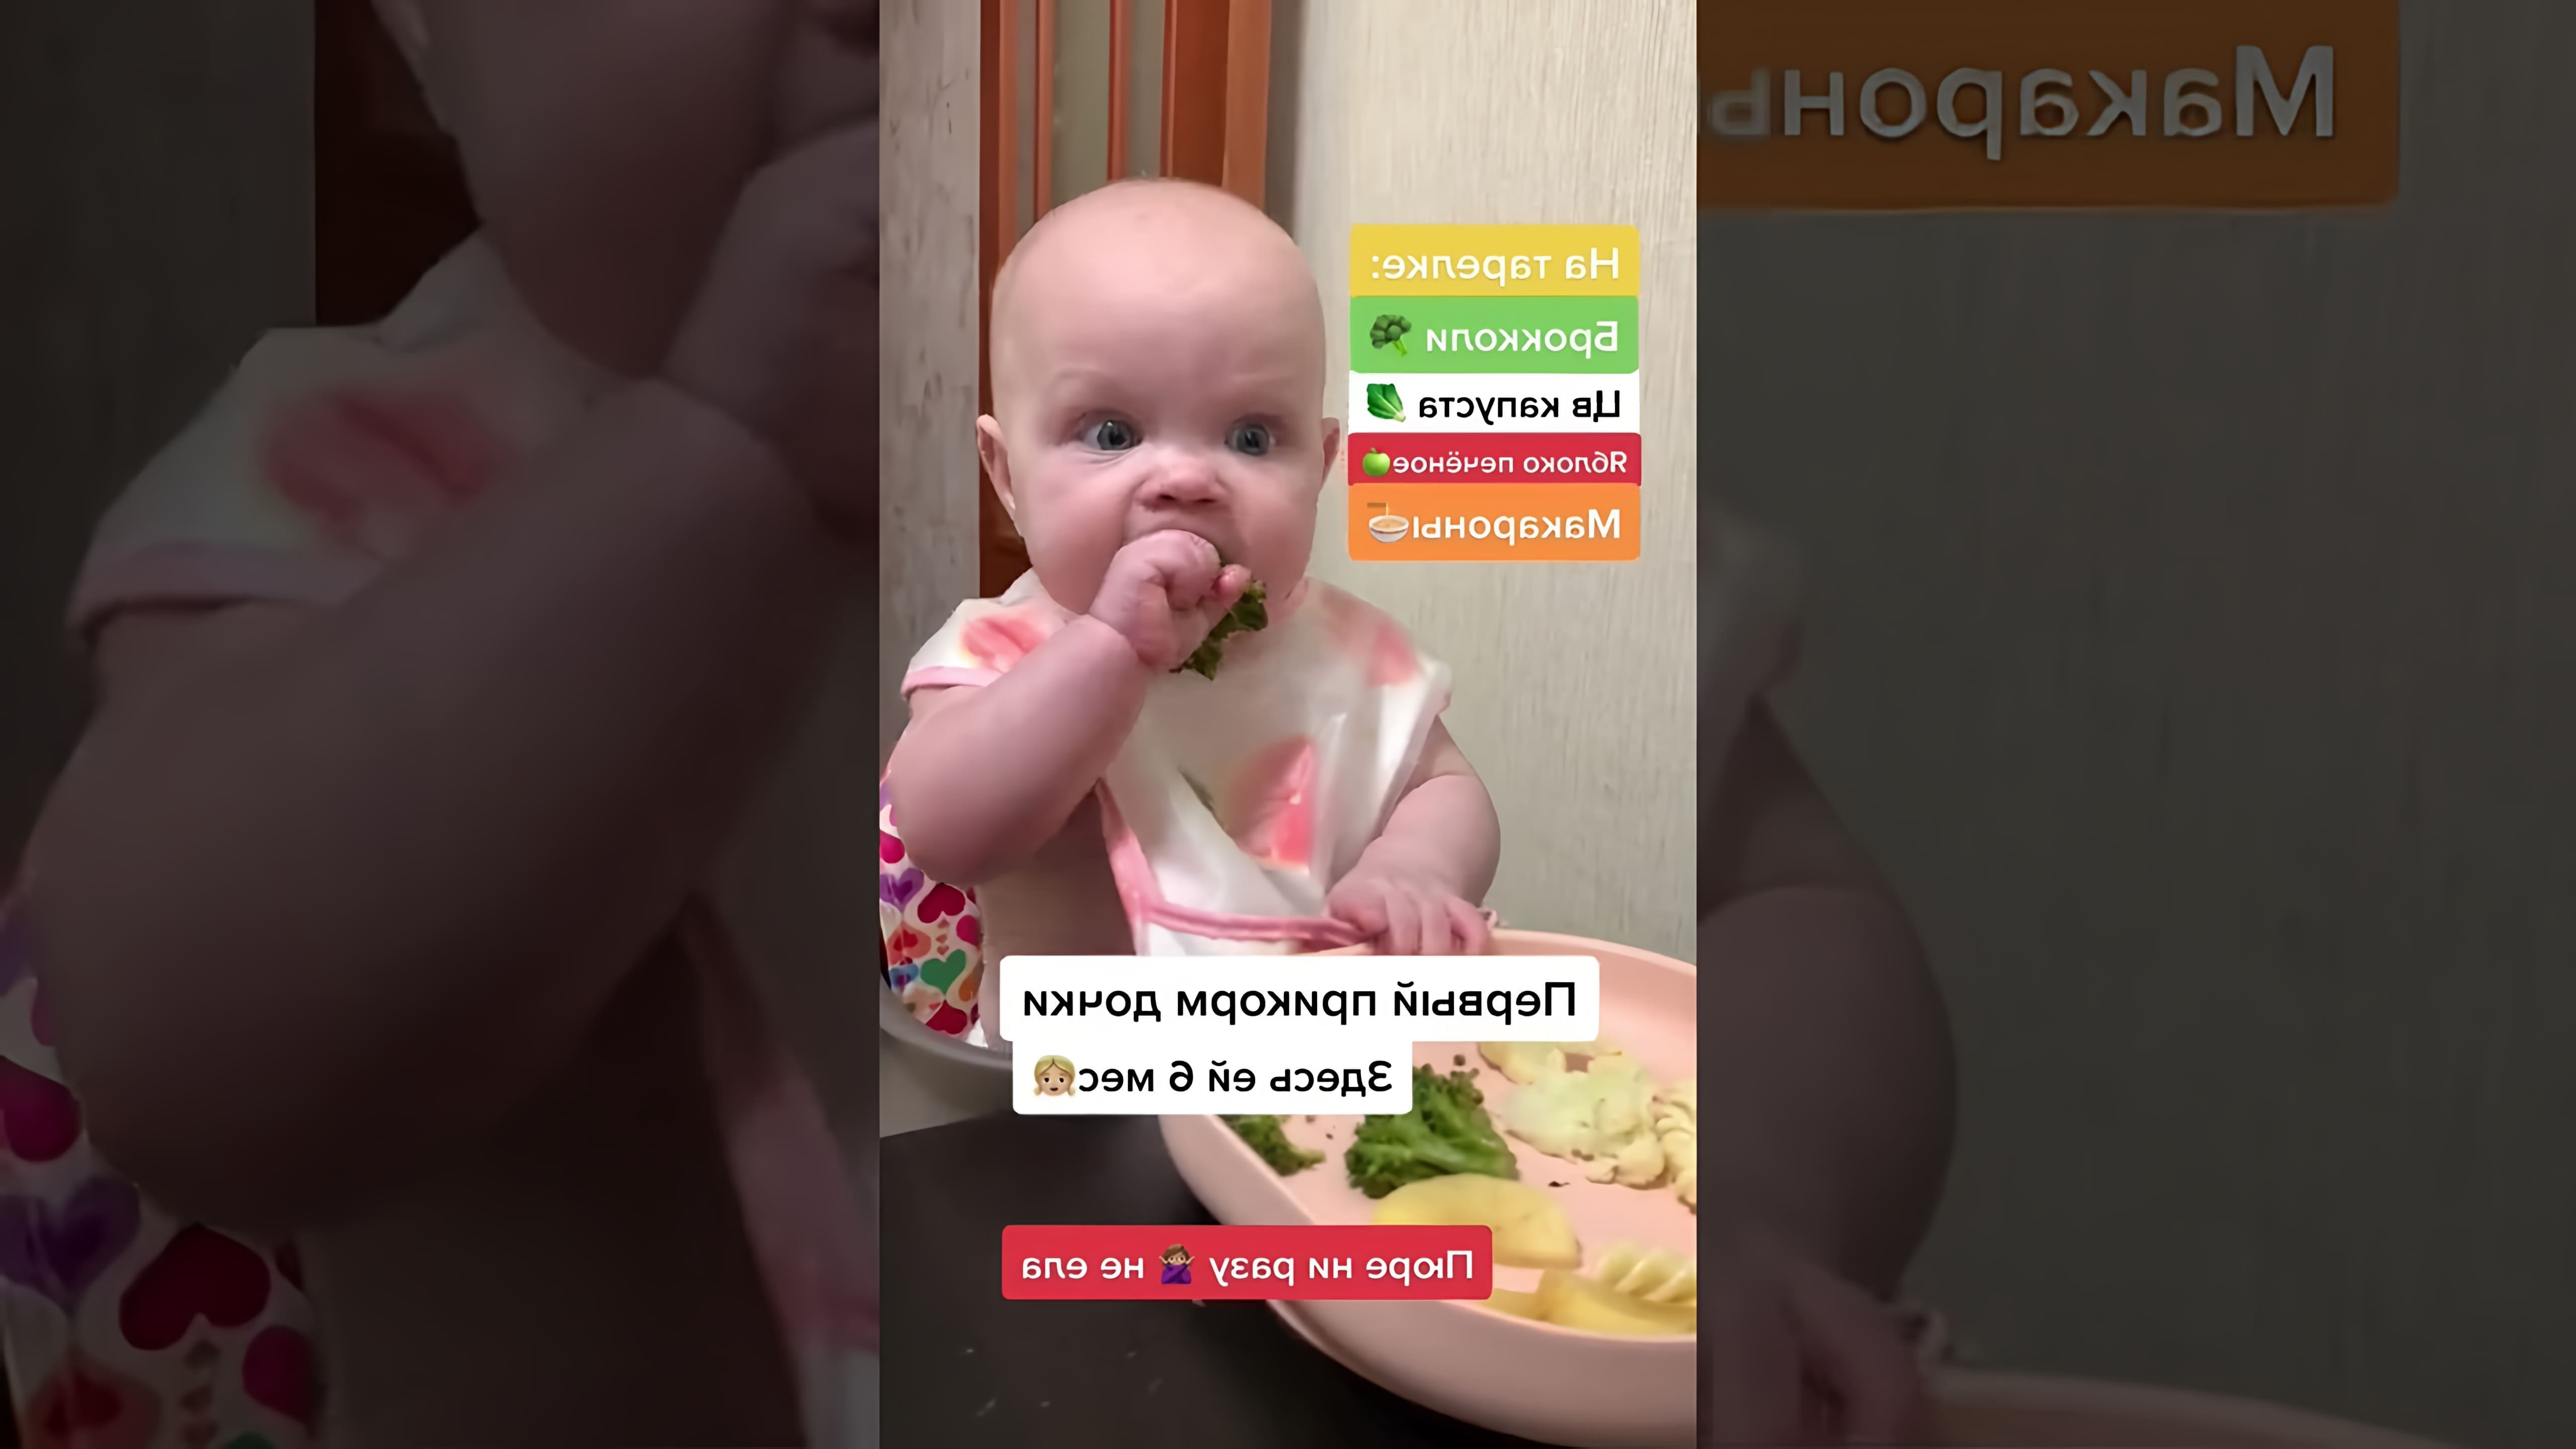 В этом видео-ролике мы увидим, как Василиса знакомится с едой в процессе самоприкорма